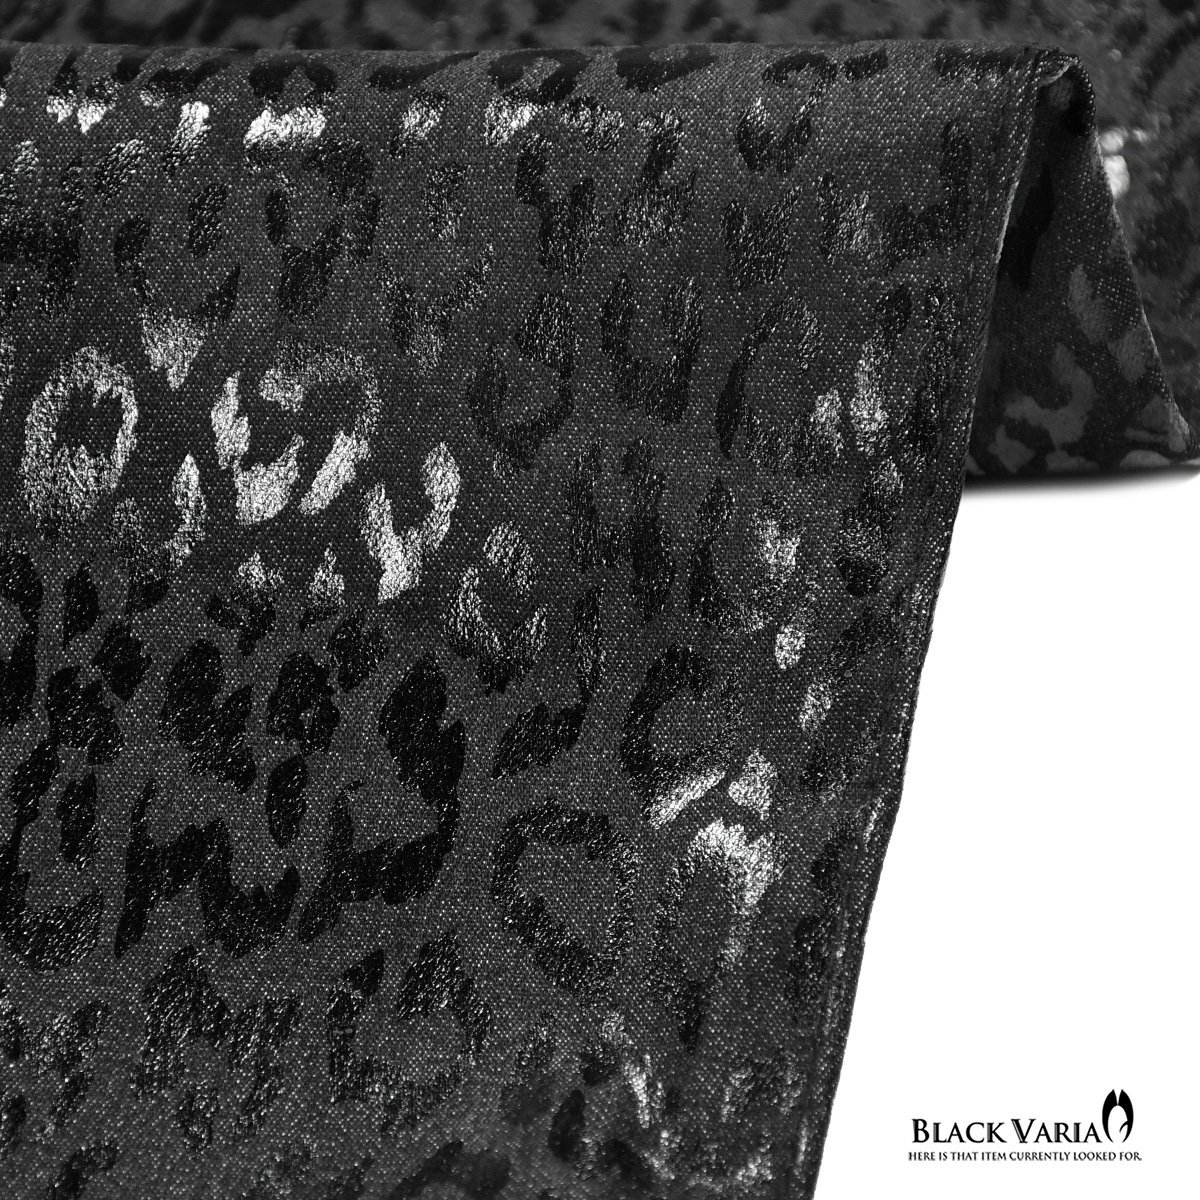 212751-bk BlackVaria ロングパンツ 箔プリント 豹柄 ブーツカット 日本製 ローライズ ボトムス シューカット メンズ(ブラック黒) 3L33 _画像4